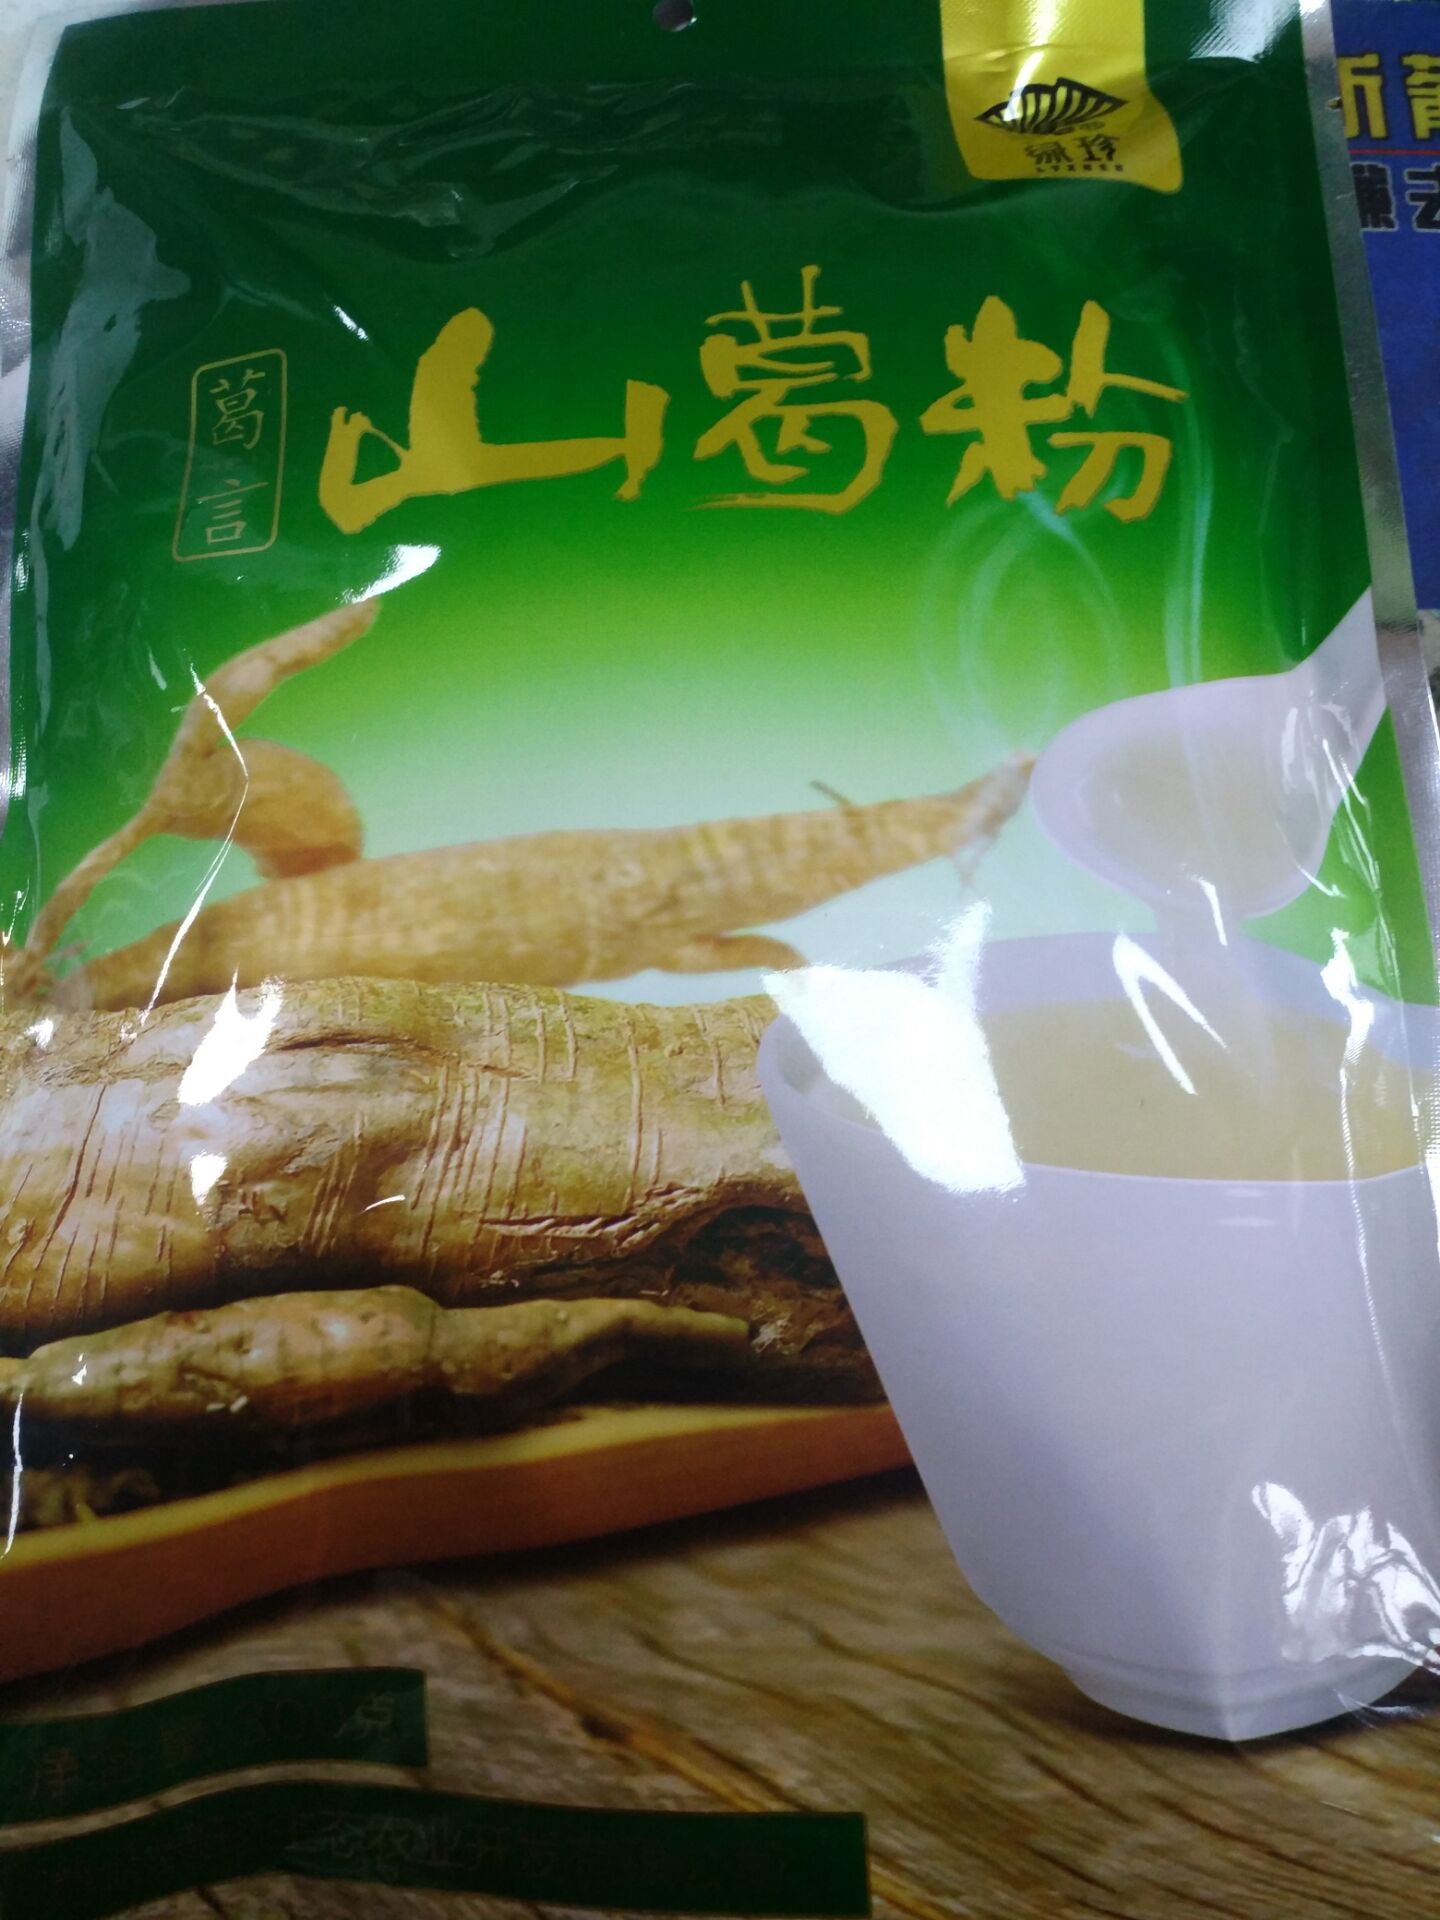 湖北中国大陆包装特产绿珍袋装特惠包邮特卖葛根粉300g葛根粉